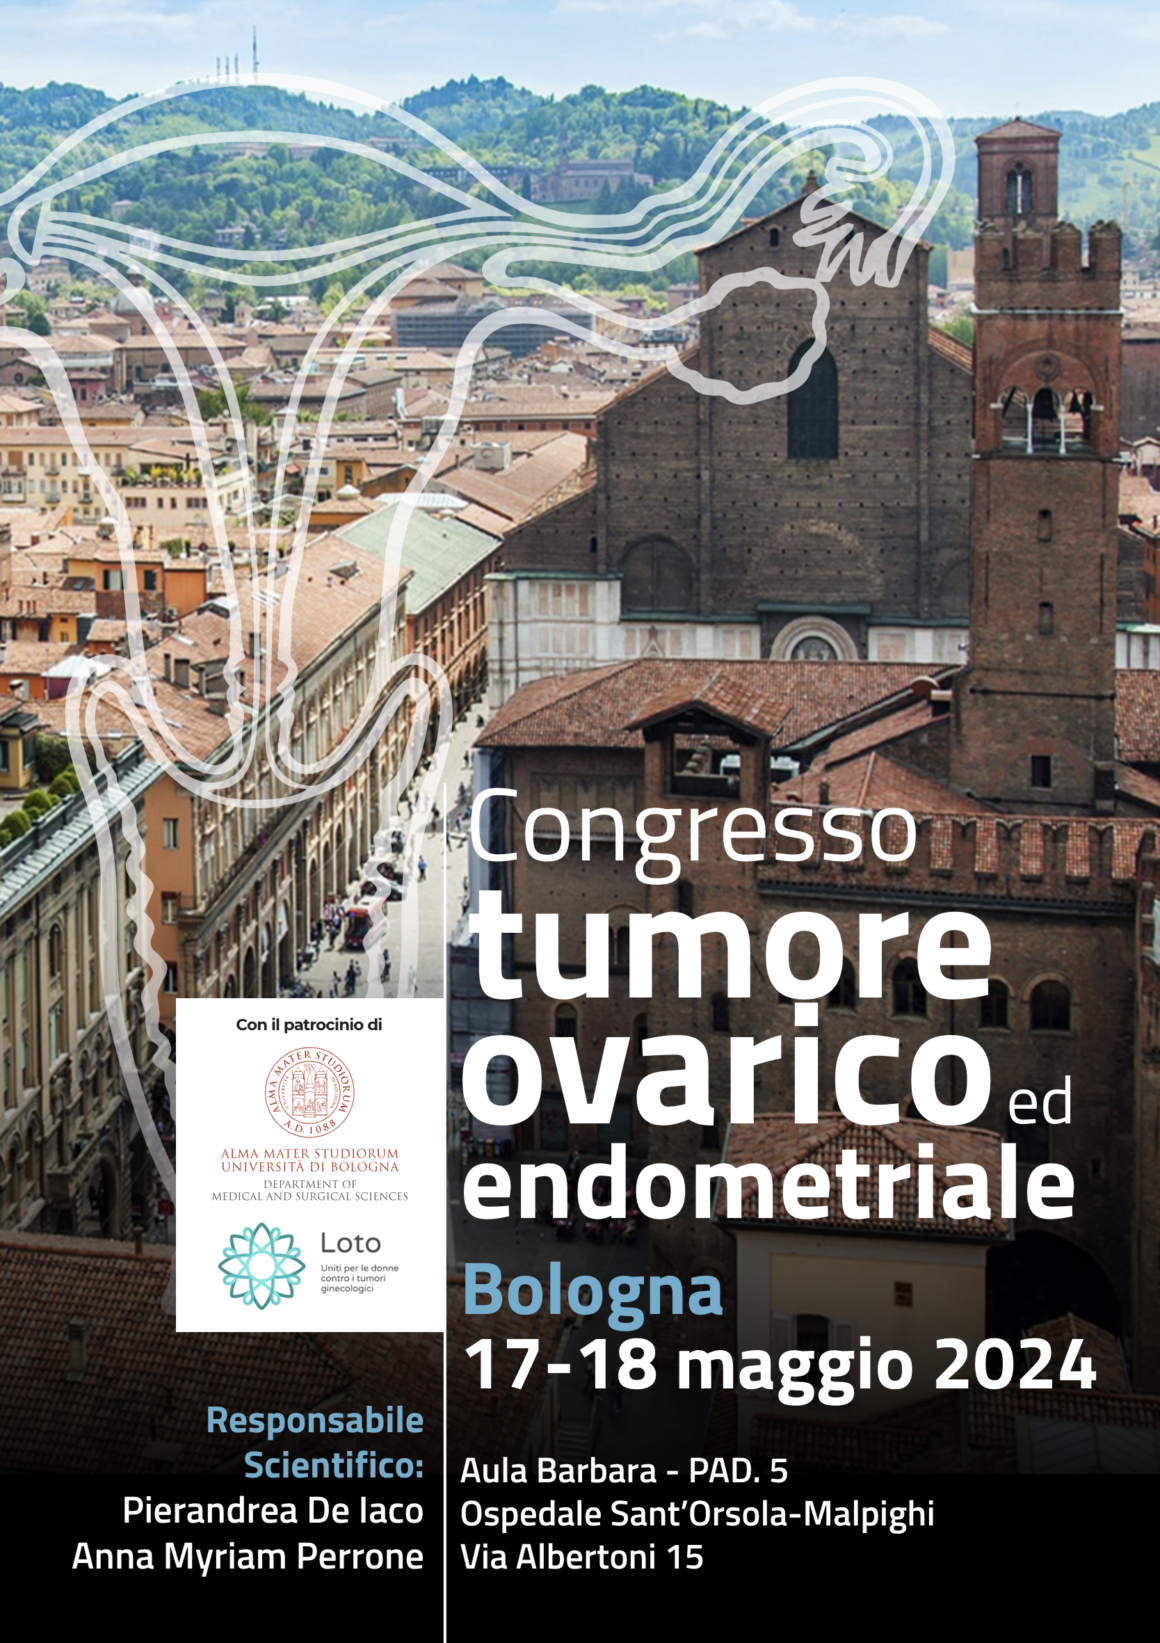 17-18 maggio 2024 Bologna – Congresso ovarico tumore ed endometriale